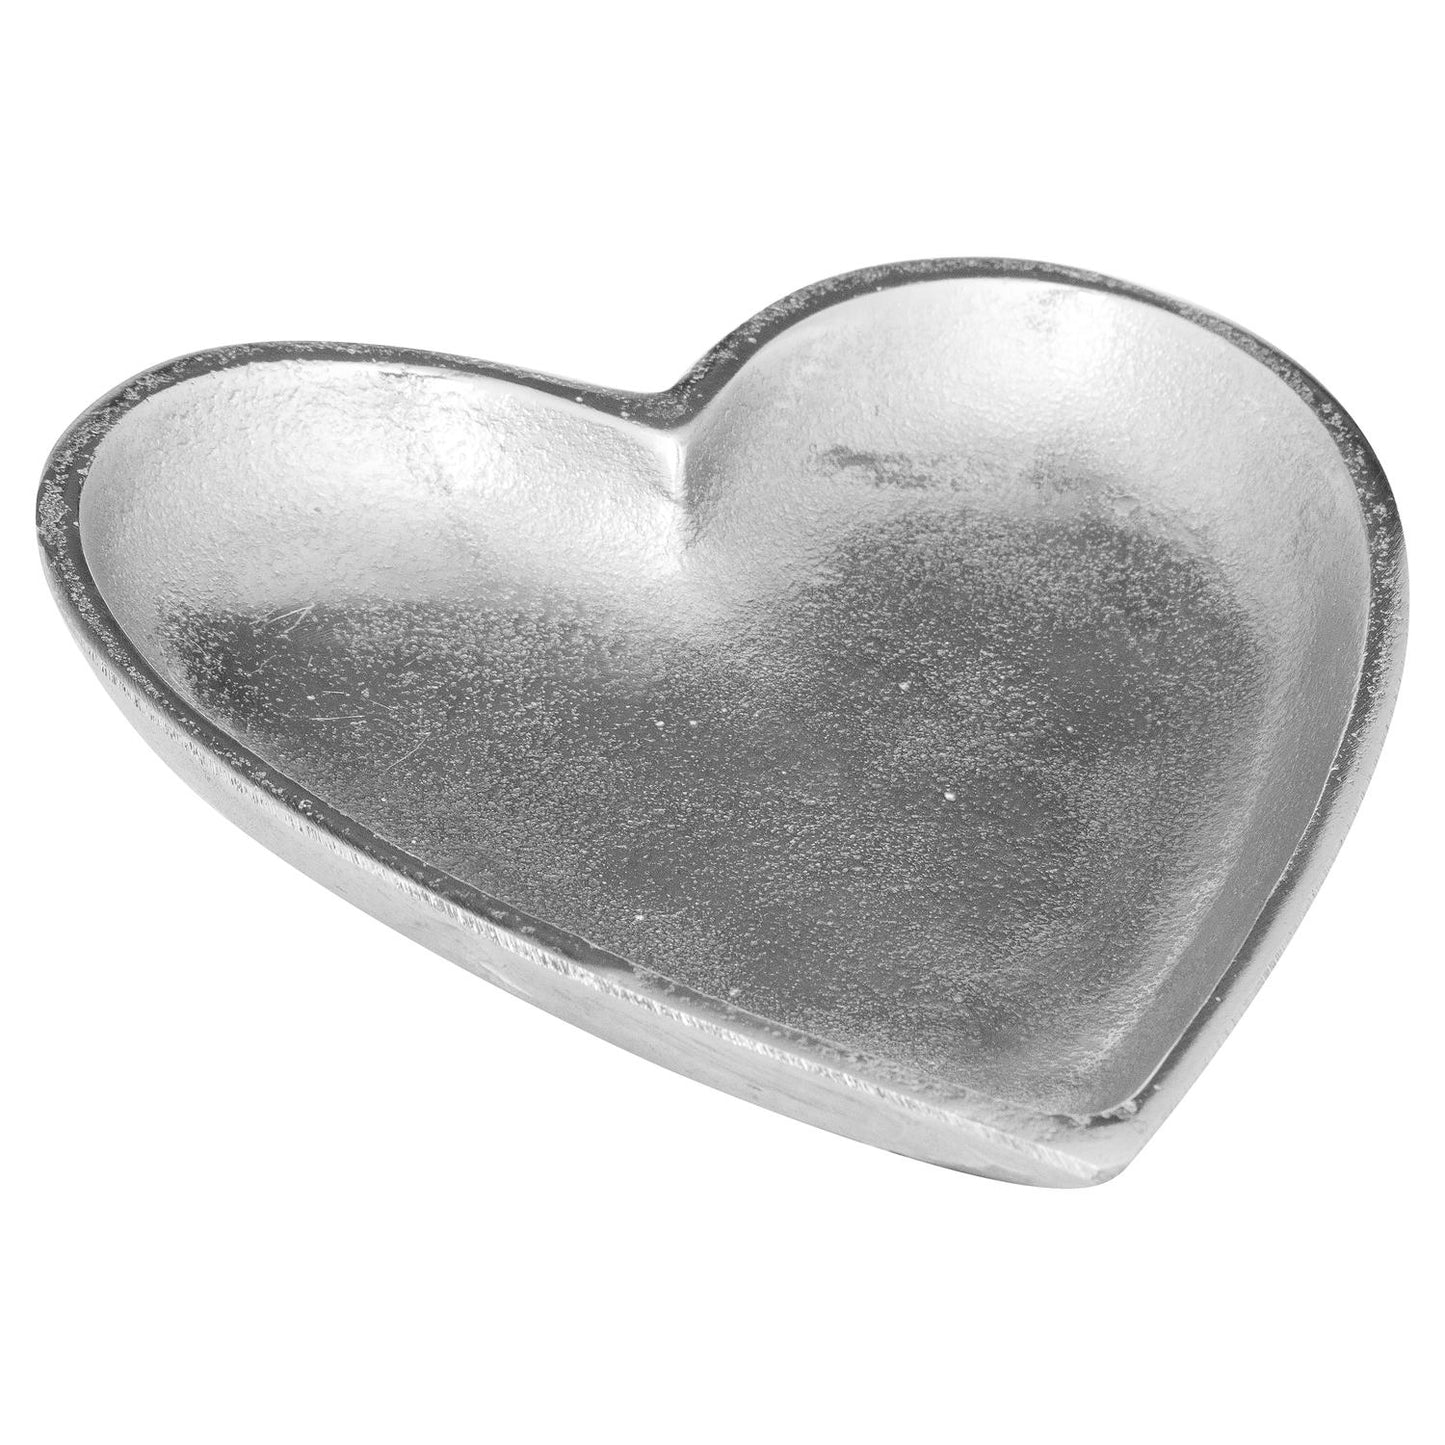 Cast Aluminium Heart Dish